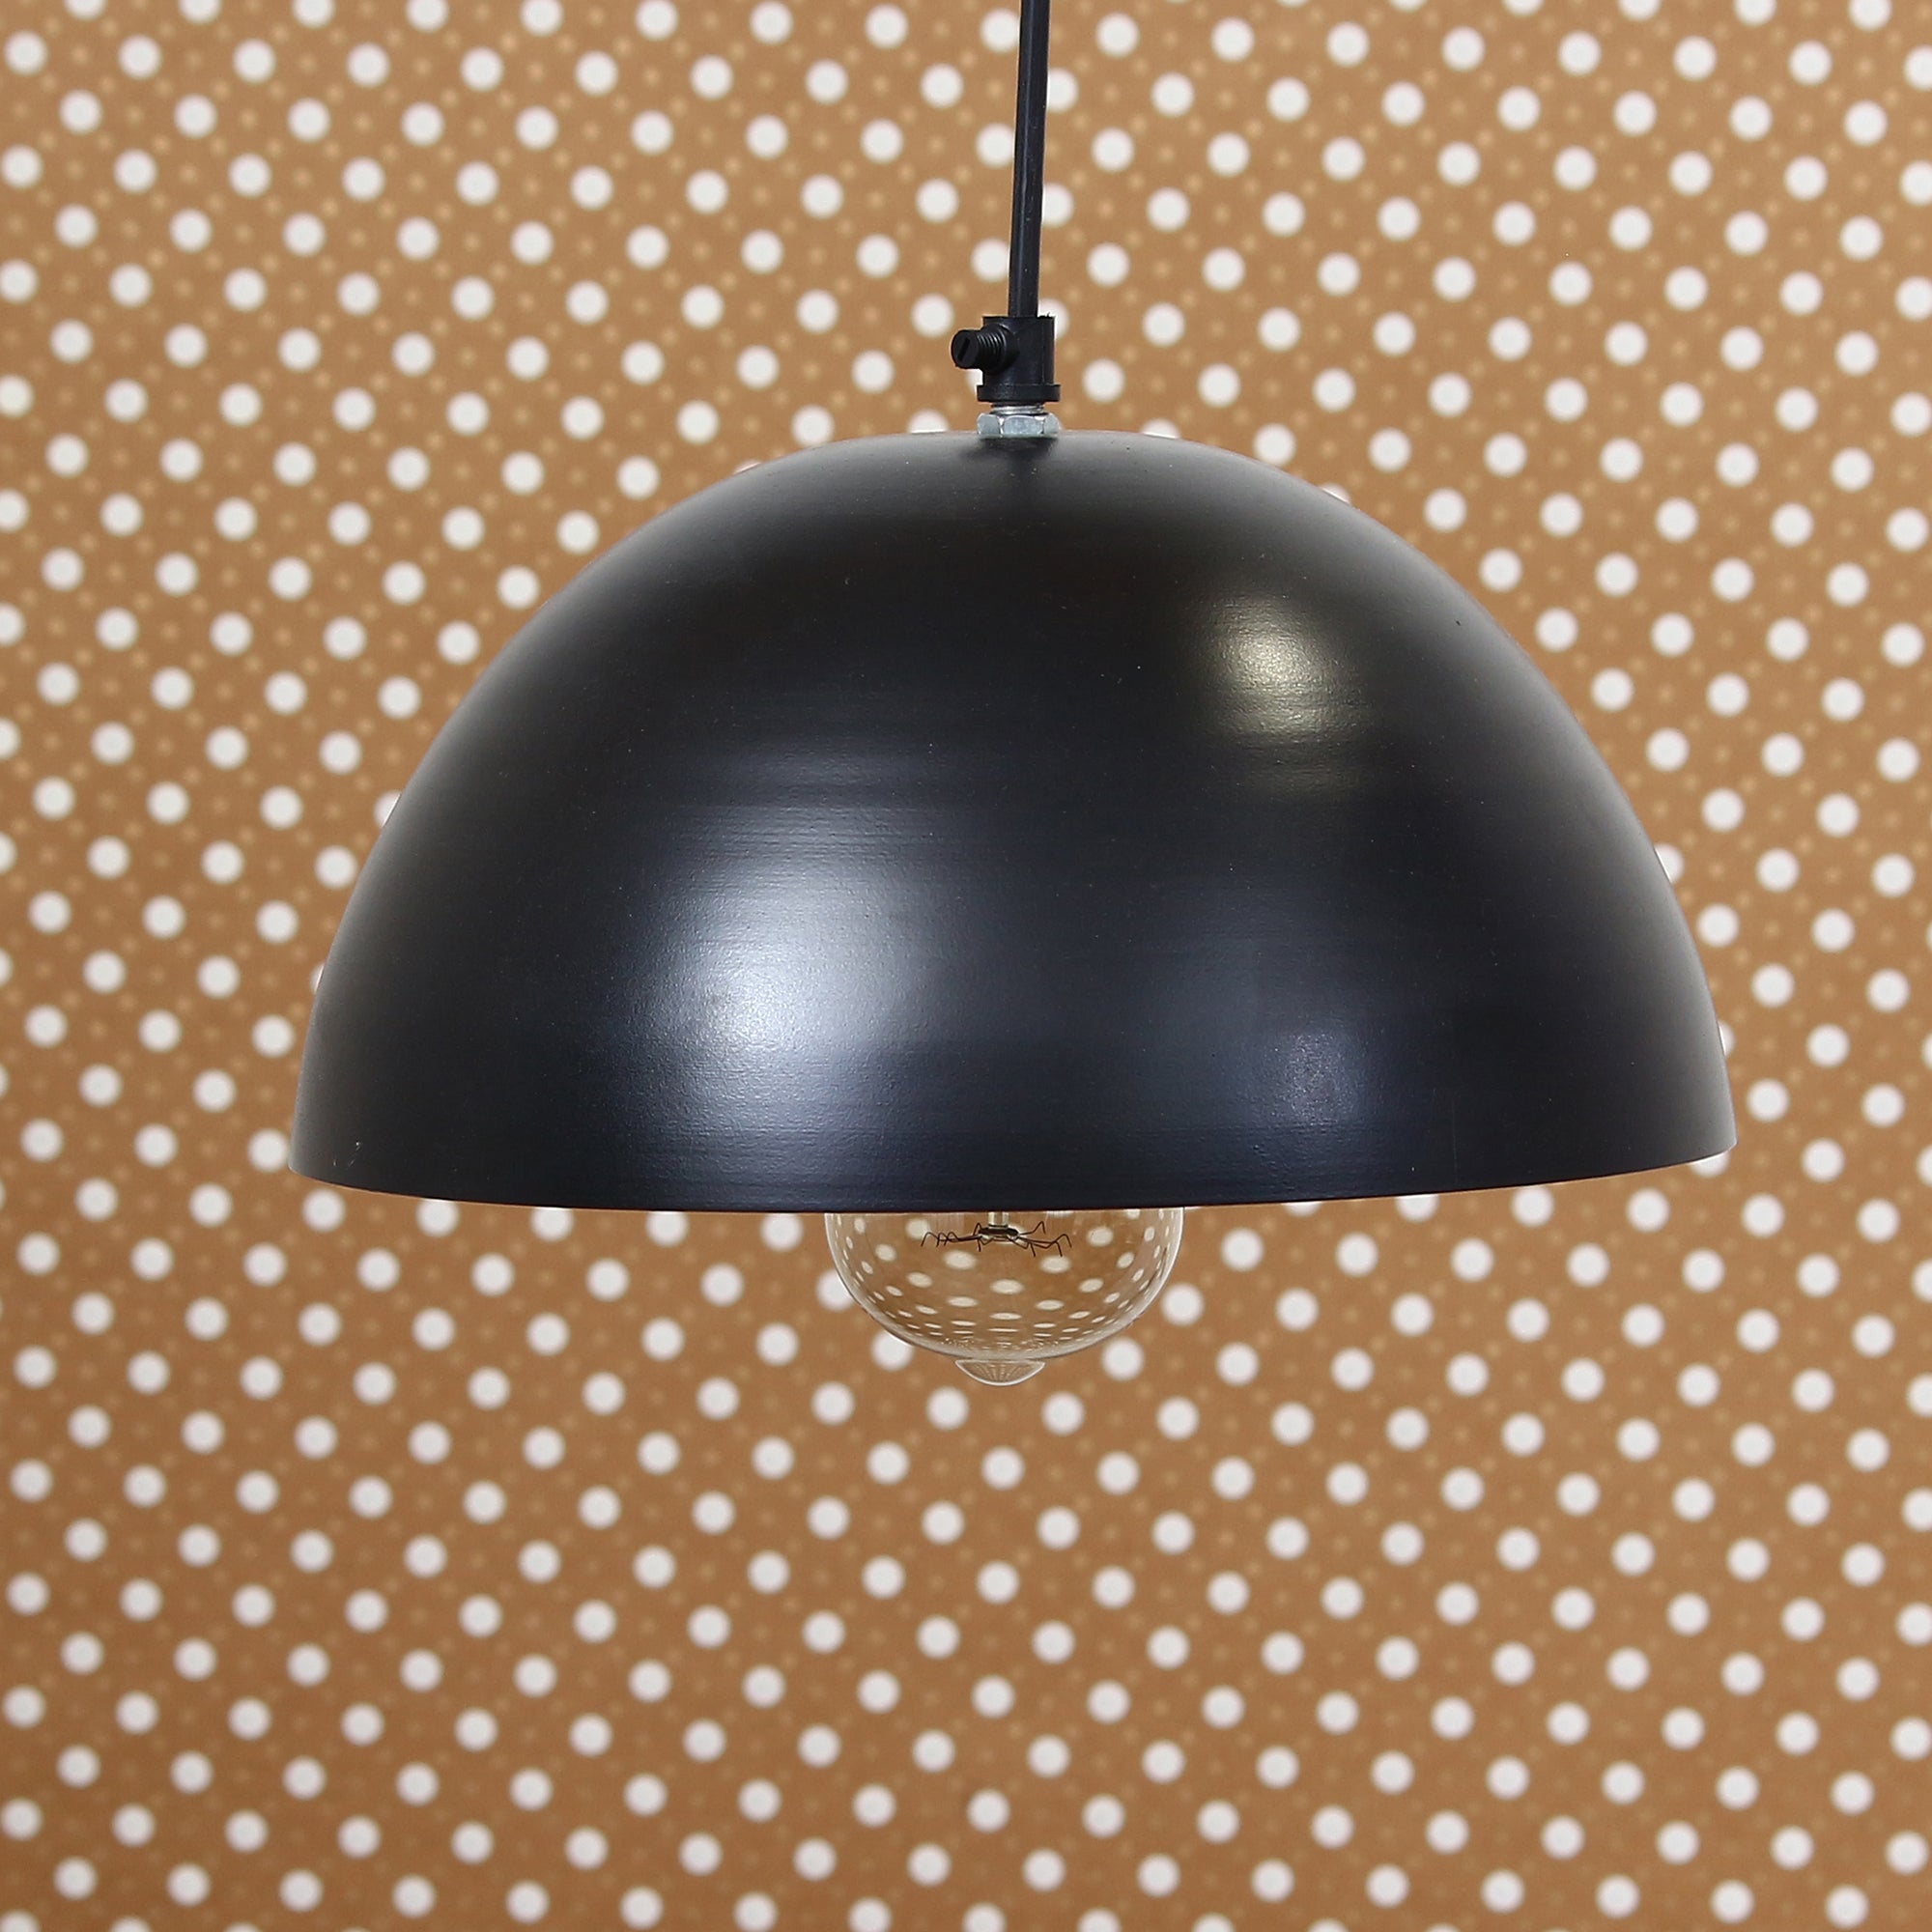 Shining Black Glossy Finish Pendant Light, 10" Diameter Ceiling Hanging Lamp for Home/Living Room/Offices/Restaurants